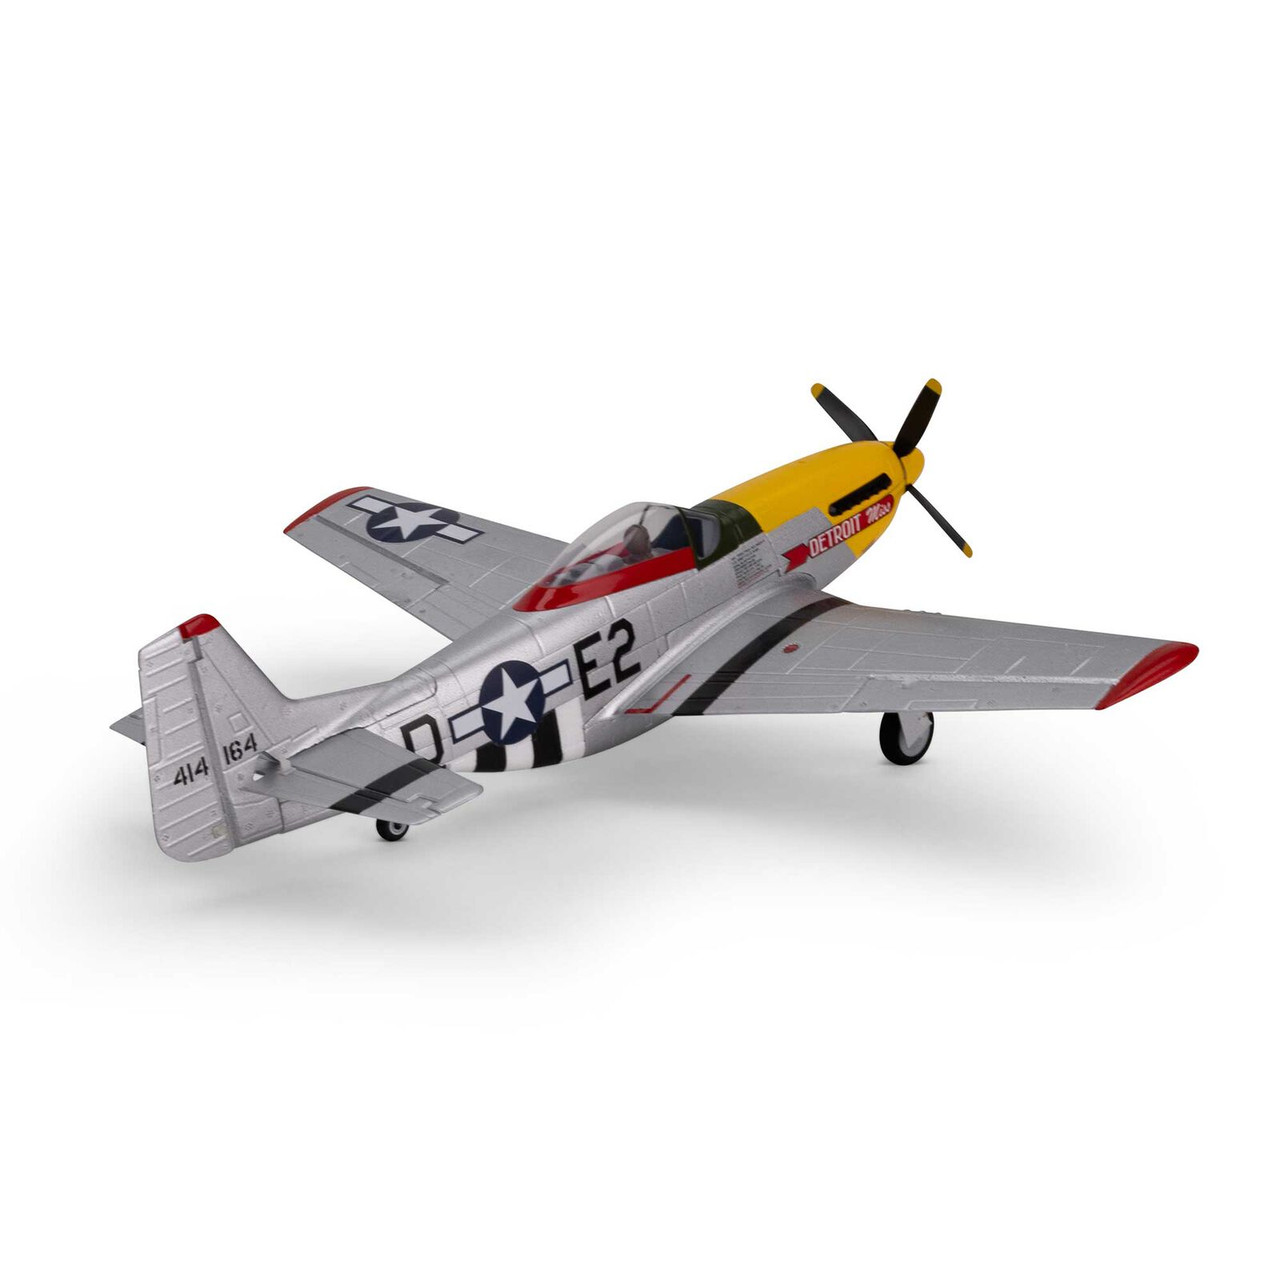 Eflite UMX P-51D Mustang “Detroit Miss” BNF Basic 